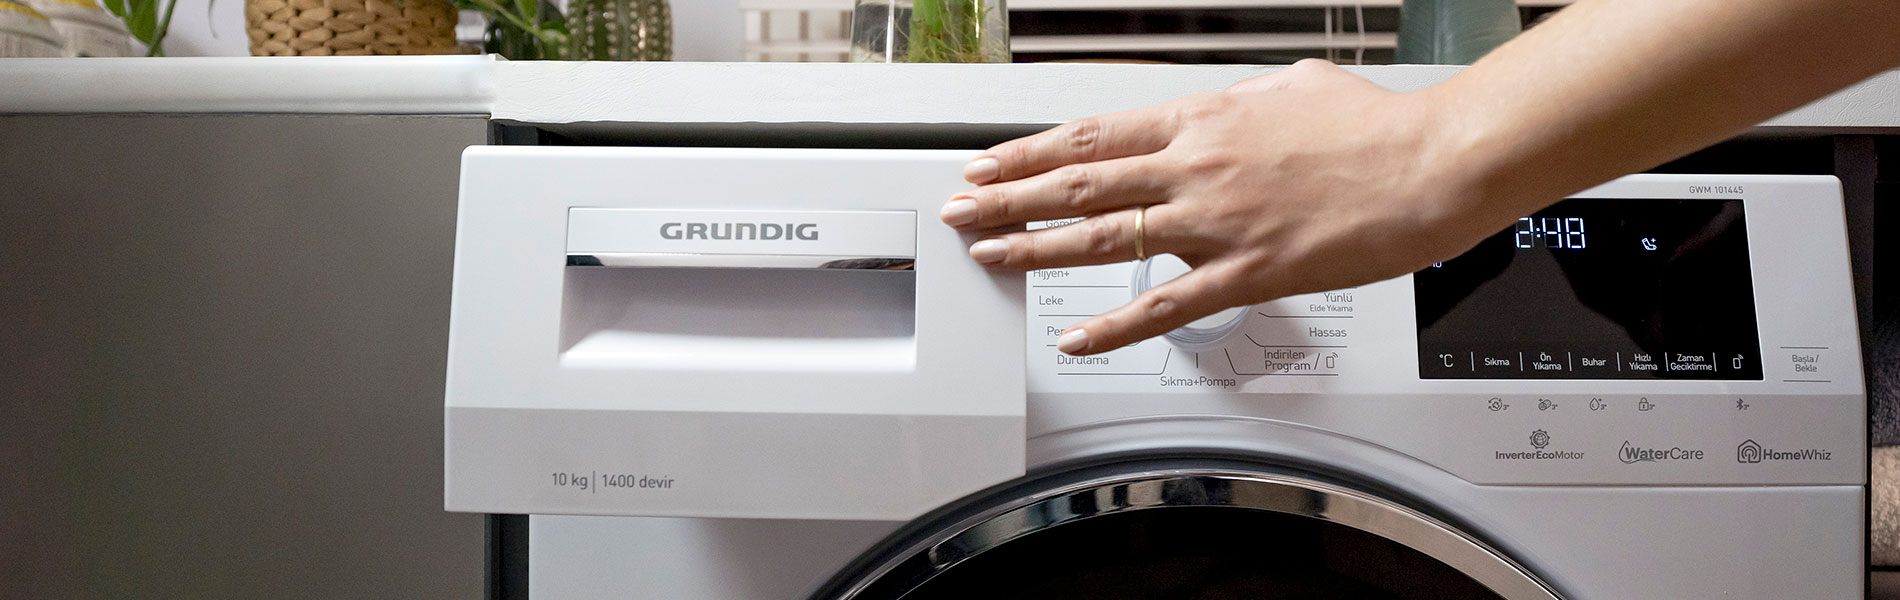 Cómo quitar el olor a sudor de tu ropa en la lavadora: ¡Adiós al mal olor!